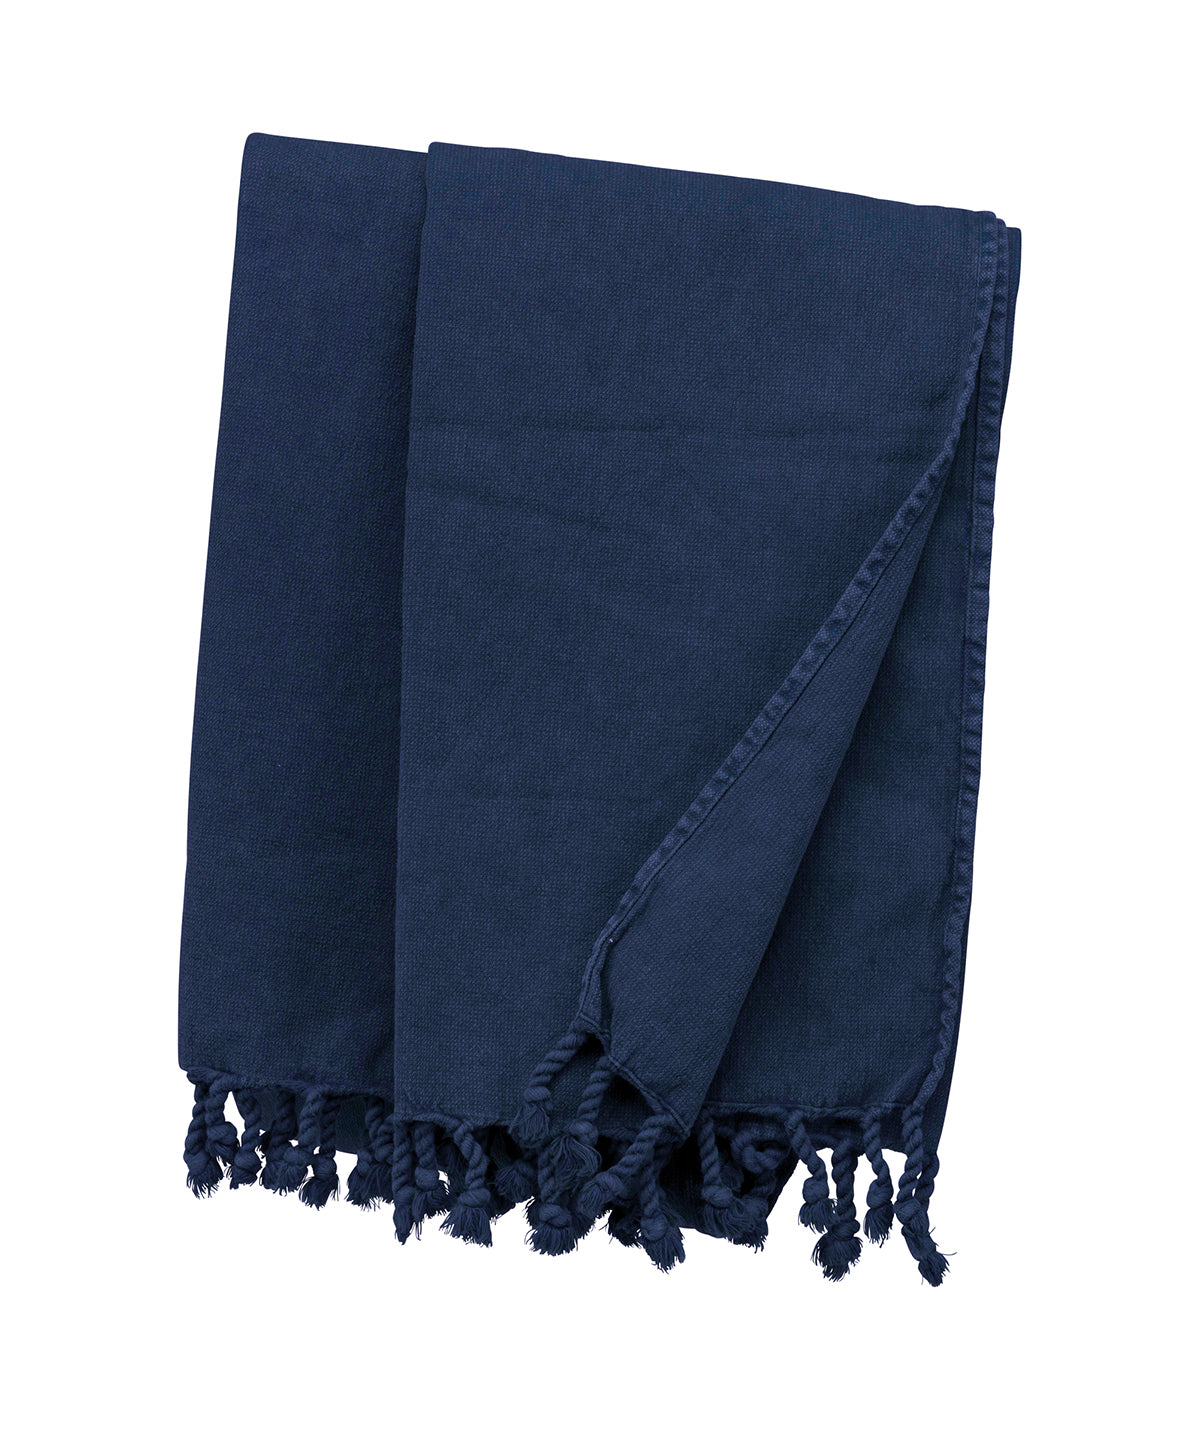 Personalised Blankets - Navy Kariban Vintage fouta